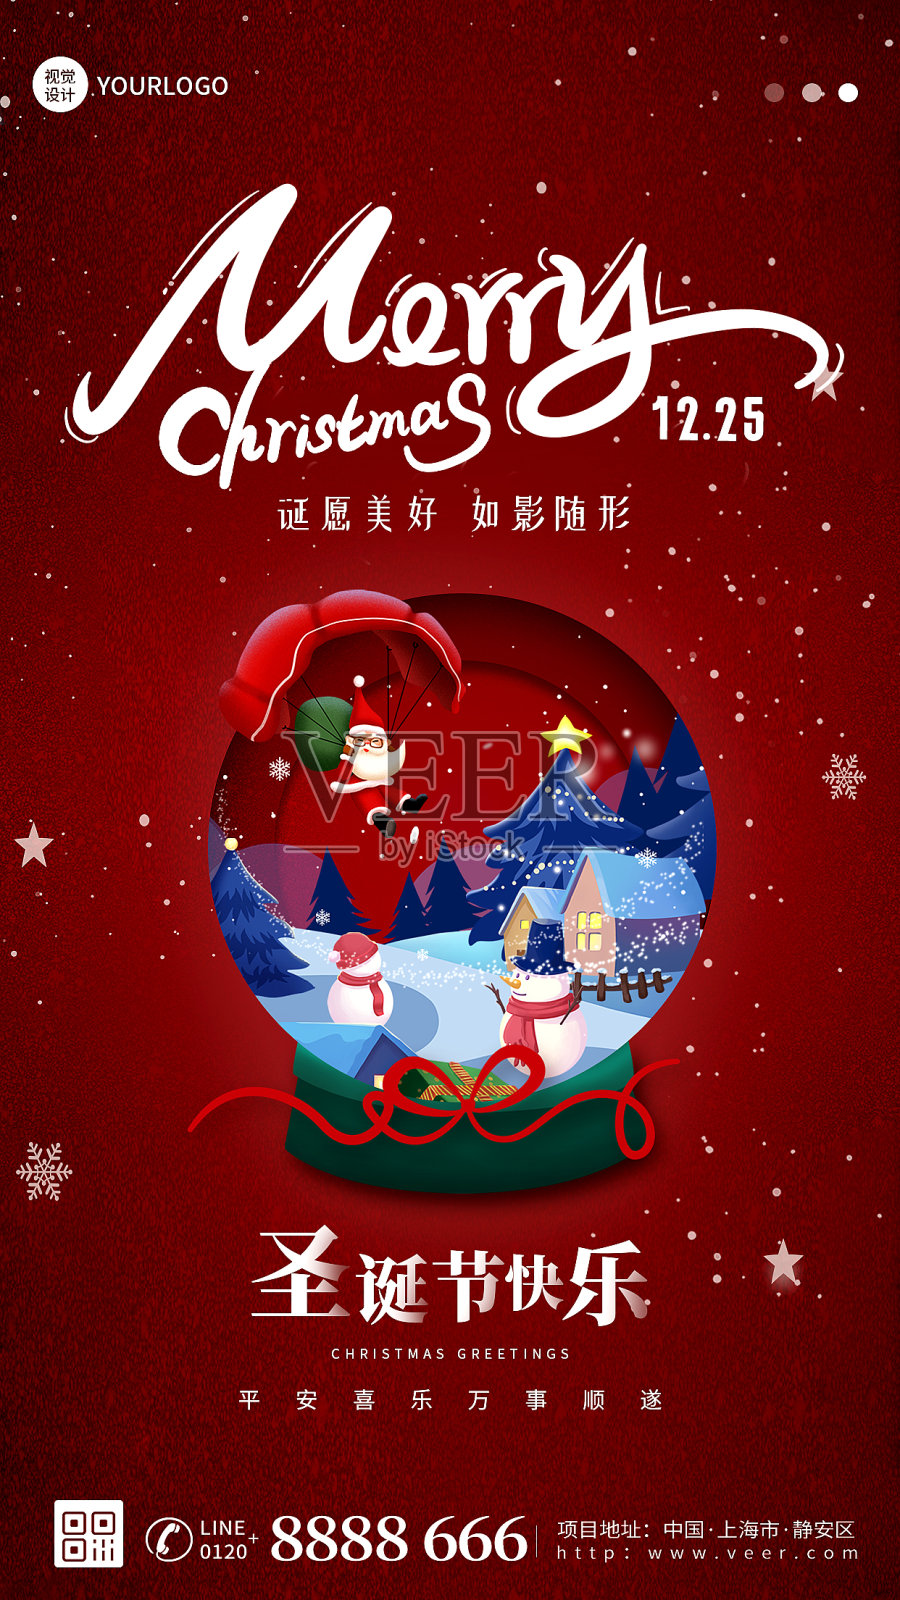 圣诞节节日活动红色简约大气手机海报设计模板素材